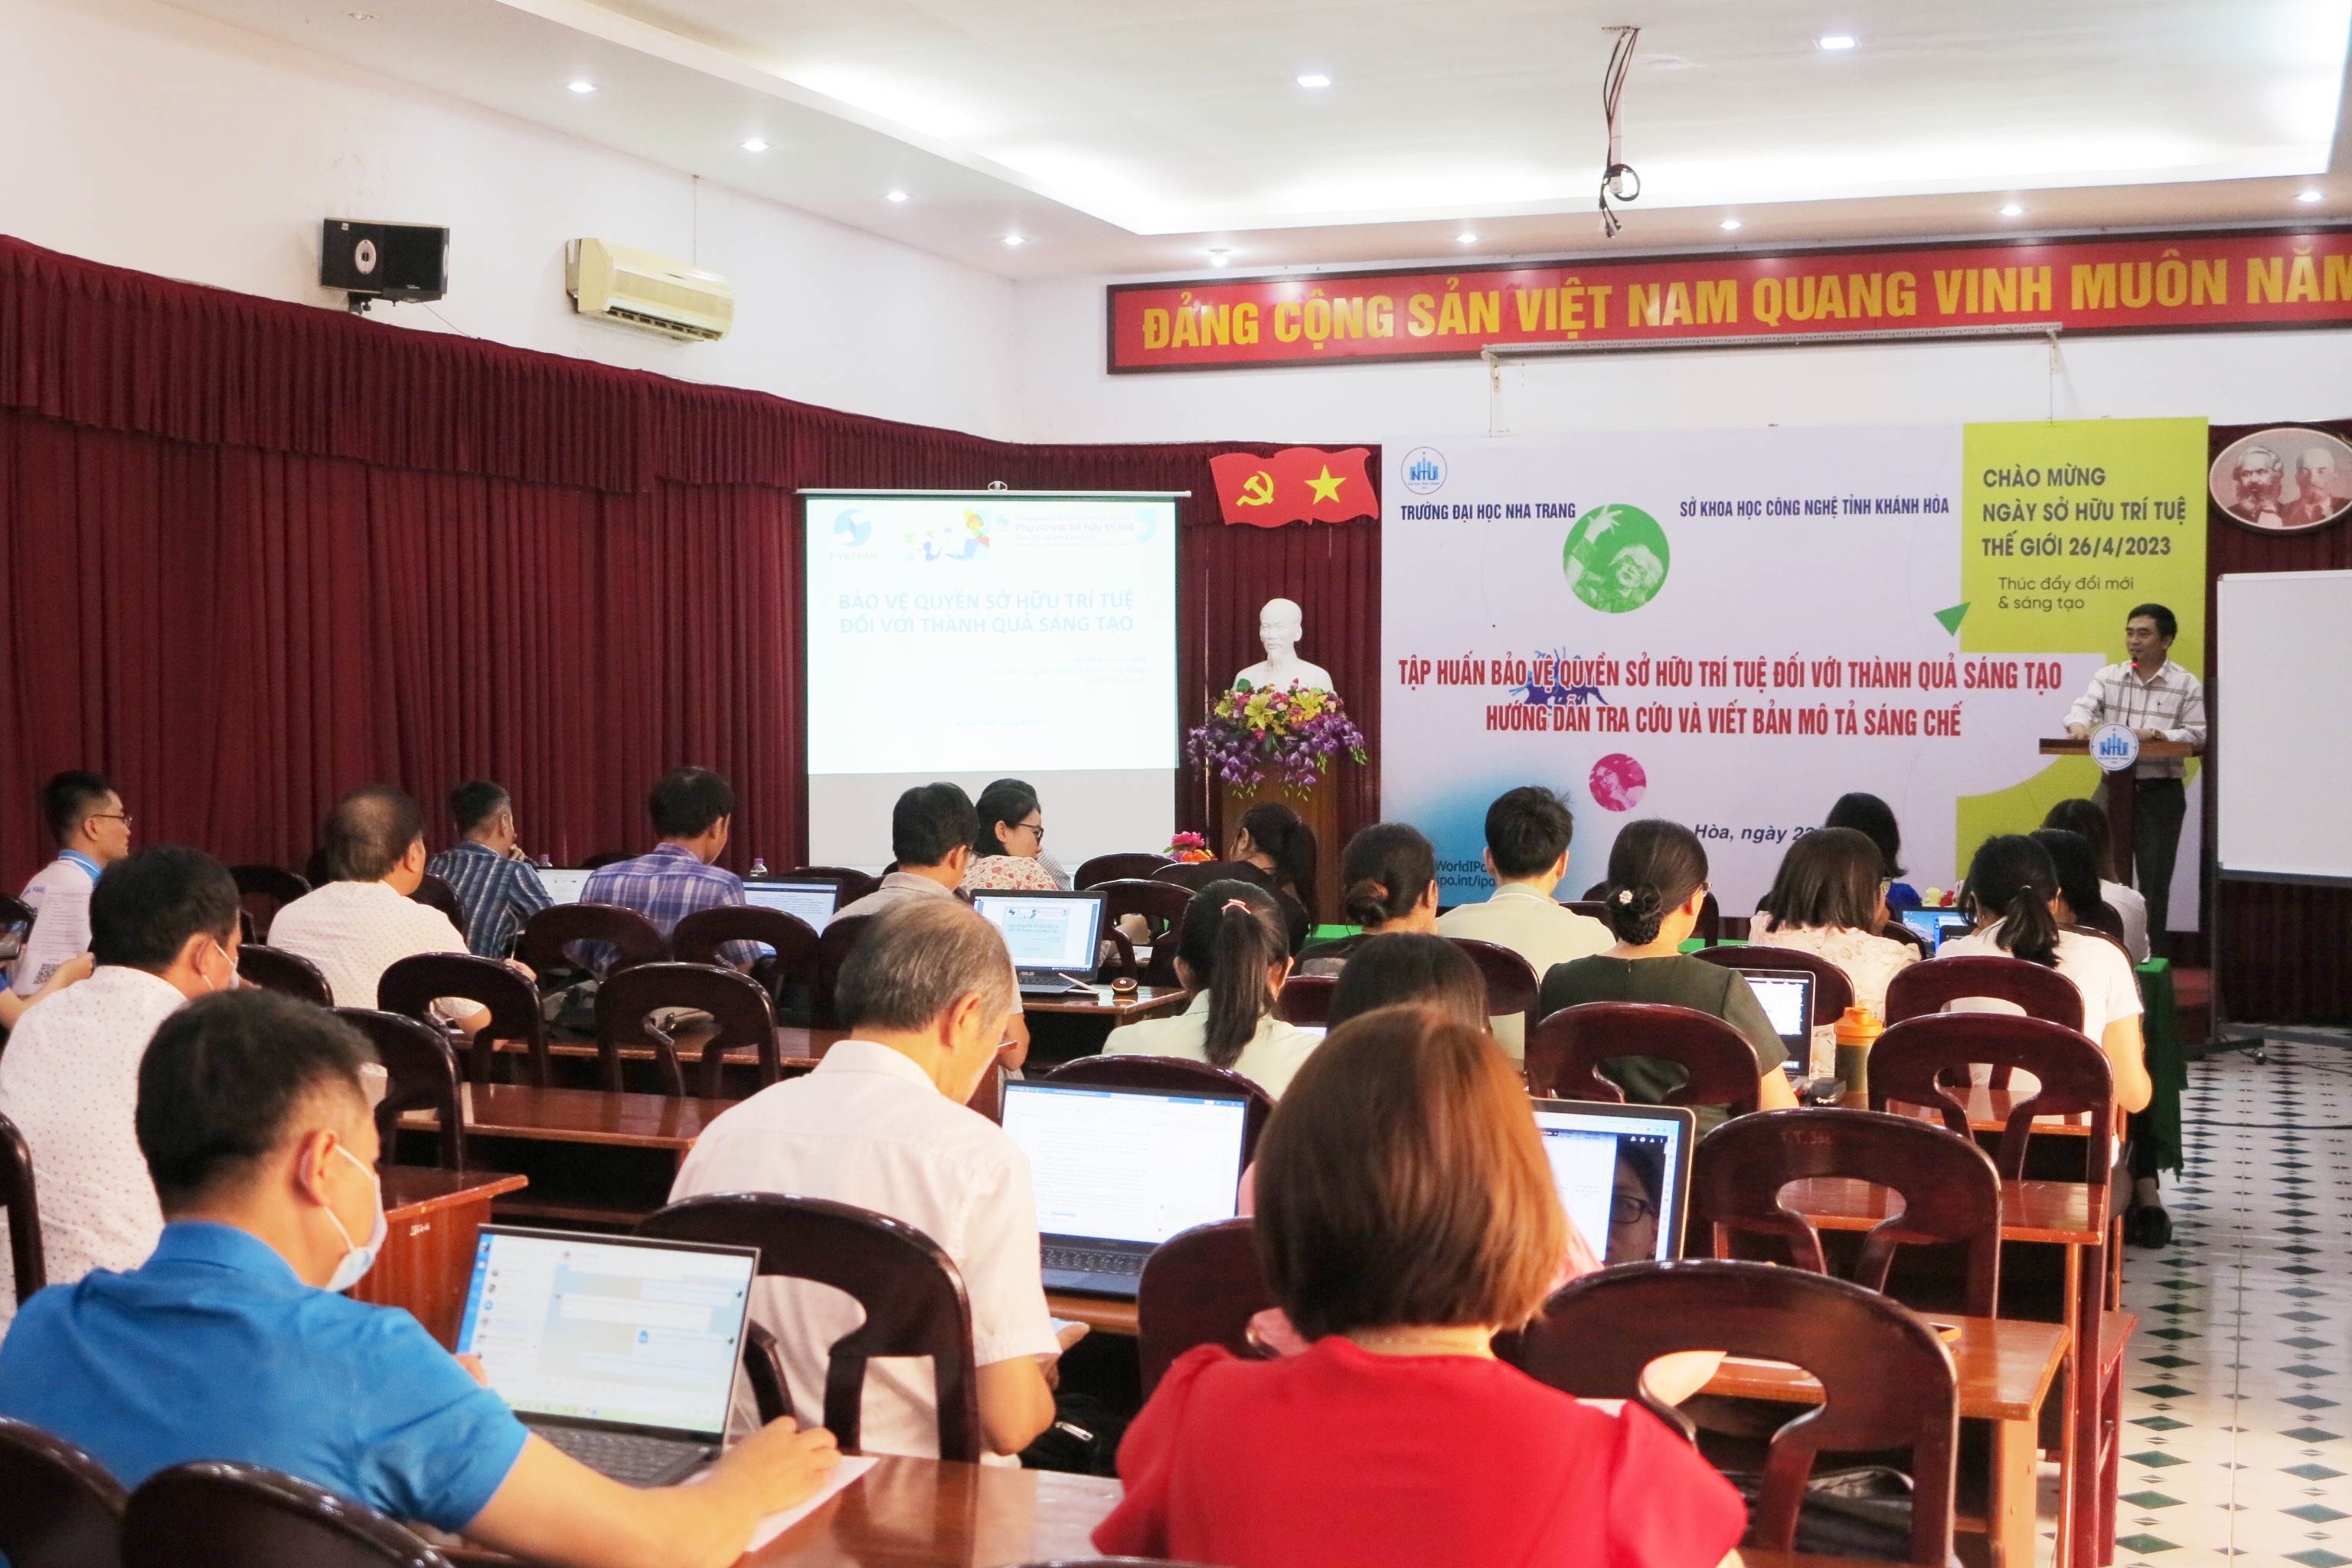 Bảo vệ quyền sở hữu trí tuệ: Quyền sở hữu trí tuệ là quan trọng để bảo vệ tài sản của các doanh nghiệp và cá nhân. Việt Nam đã có nhiều đóng góp lớn để nâng cao nhận thức về vấn đề này và đang đẩy mạnh các biện pháp bảo vệ quyền sở hữu trí tuệ nhằm bảo vệ thành quả sáng tạo của người dân.